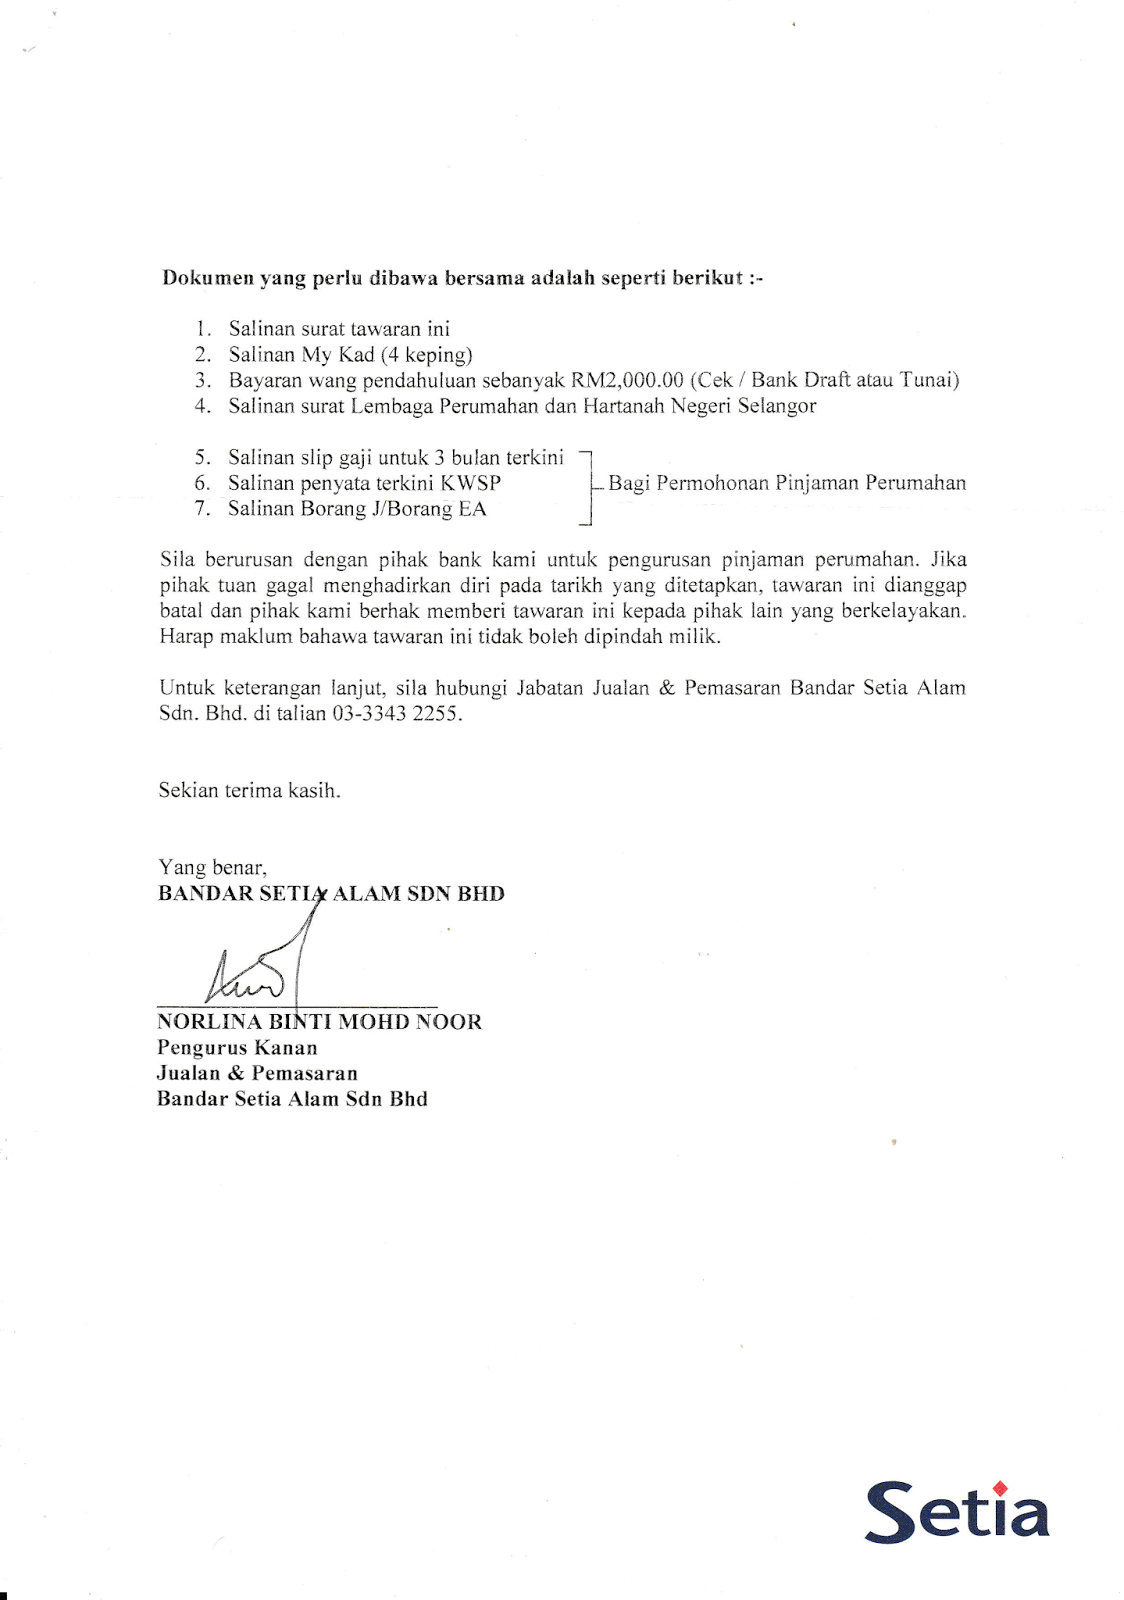 Surat Rayuan Rumah Selangorku - Kecemasan h